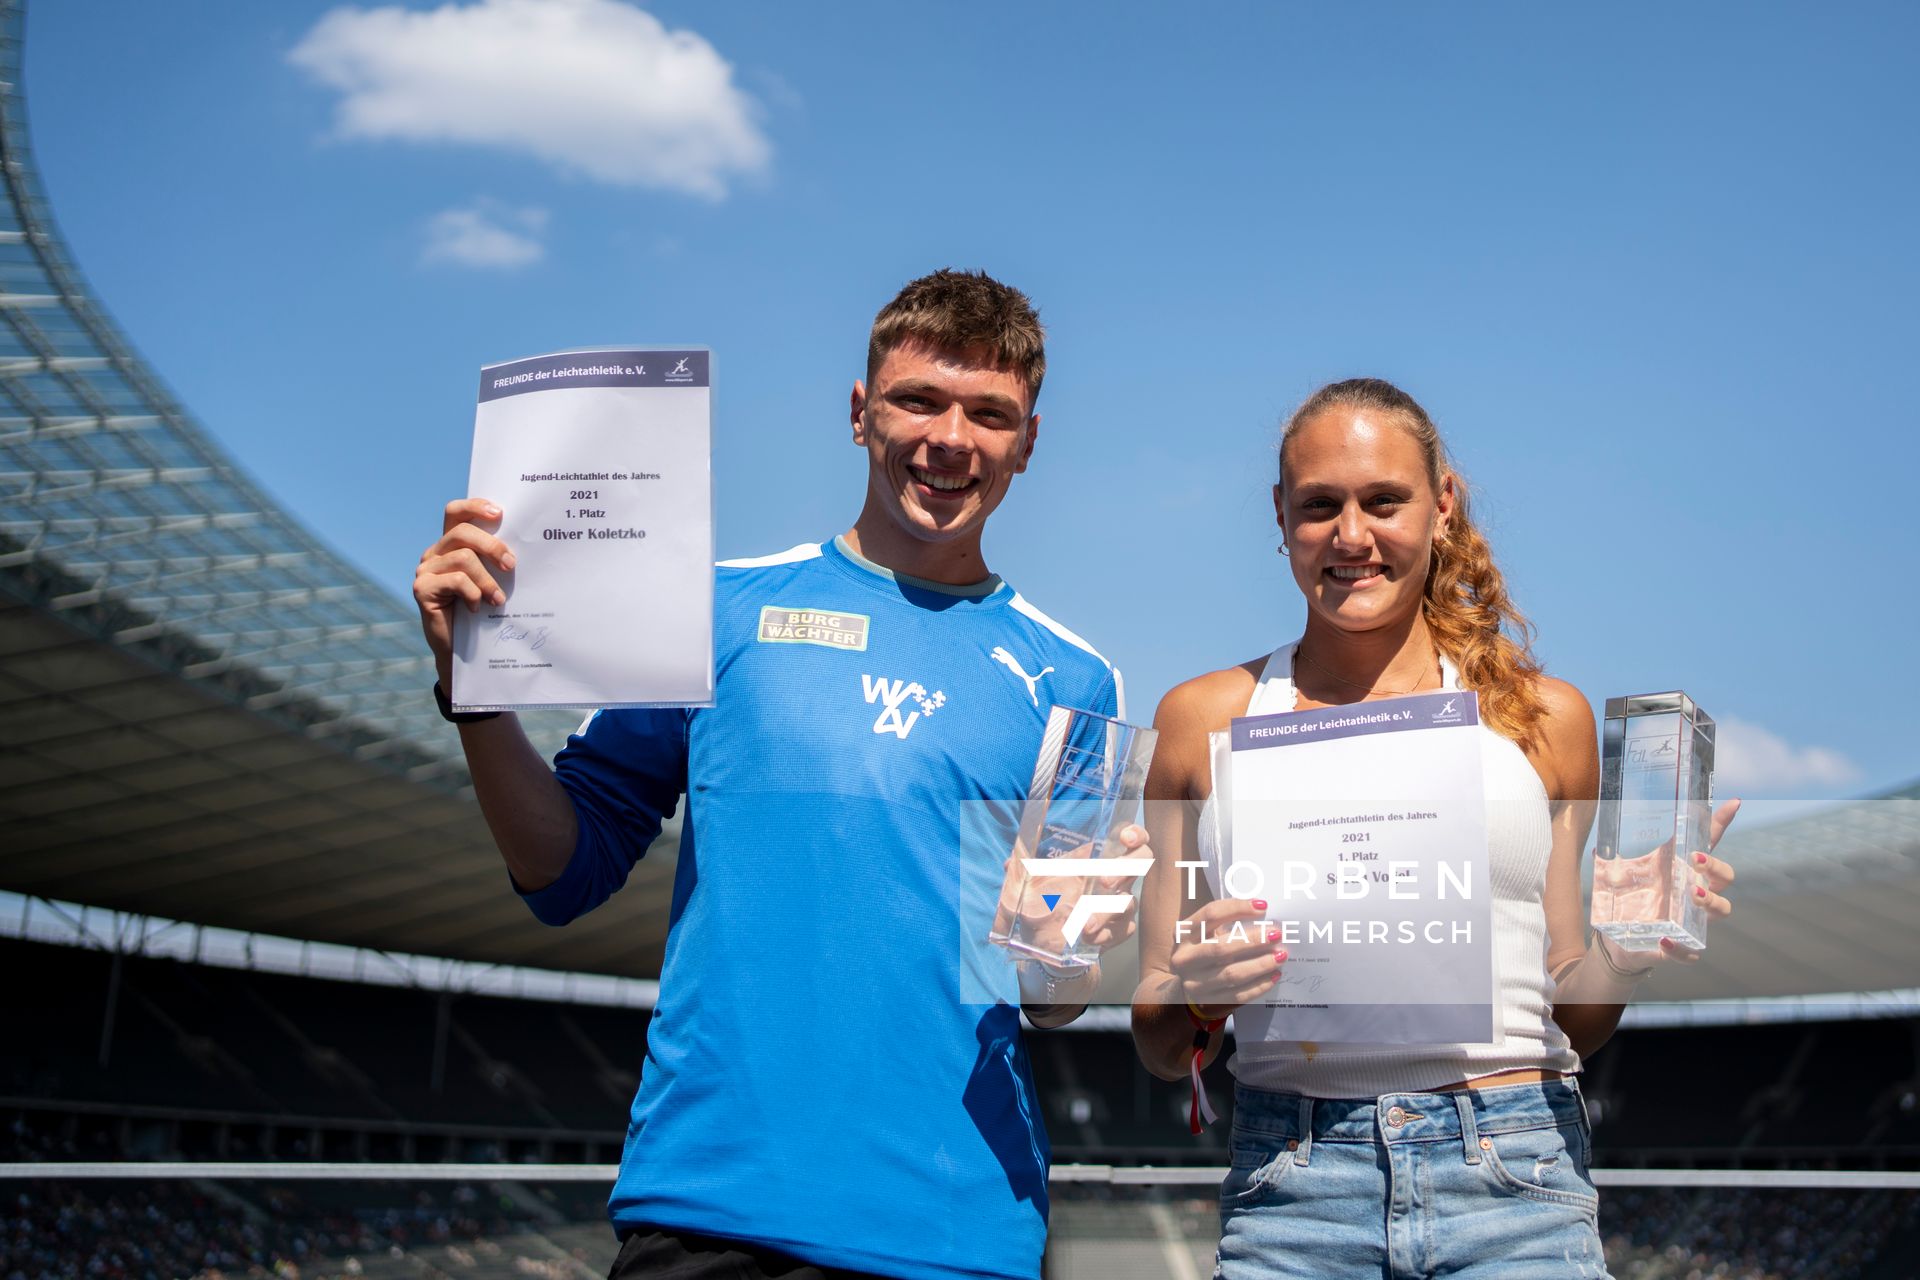 vOliver Koletzko (Wiesbadener LV) und Sarah Vogel (LG Seligenstadt) wurden zur Jugendsportler des Jahres 2021 gewaehlt und waehrend der deutschen Leichtathletik-Meisterschaften im Olympiastadion am 26.06.2022 in Berlin geehrt